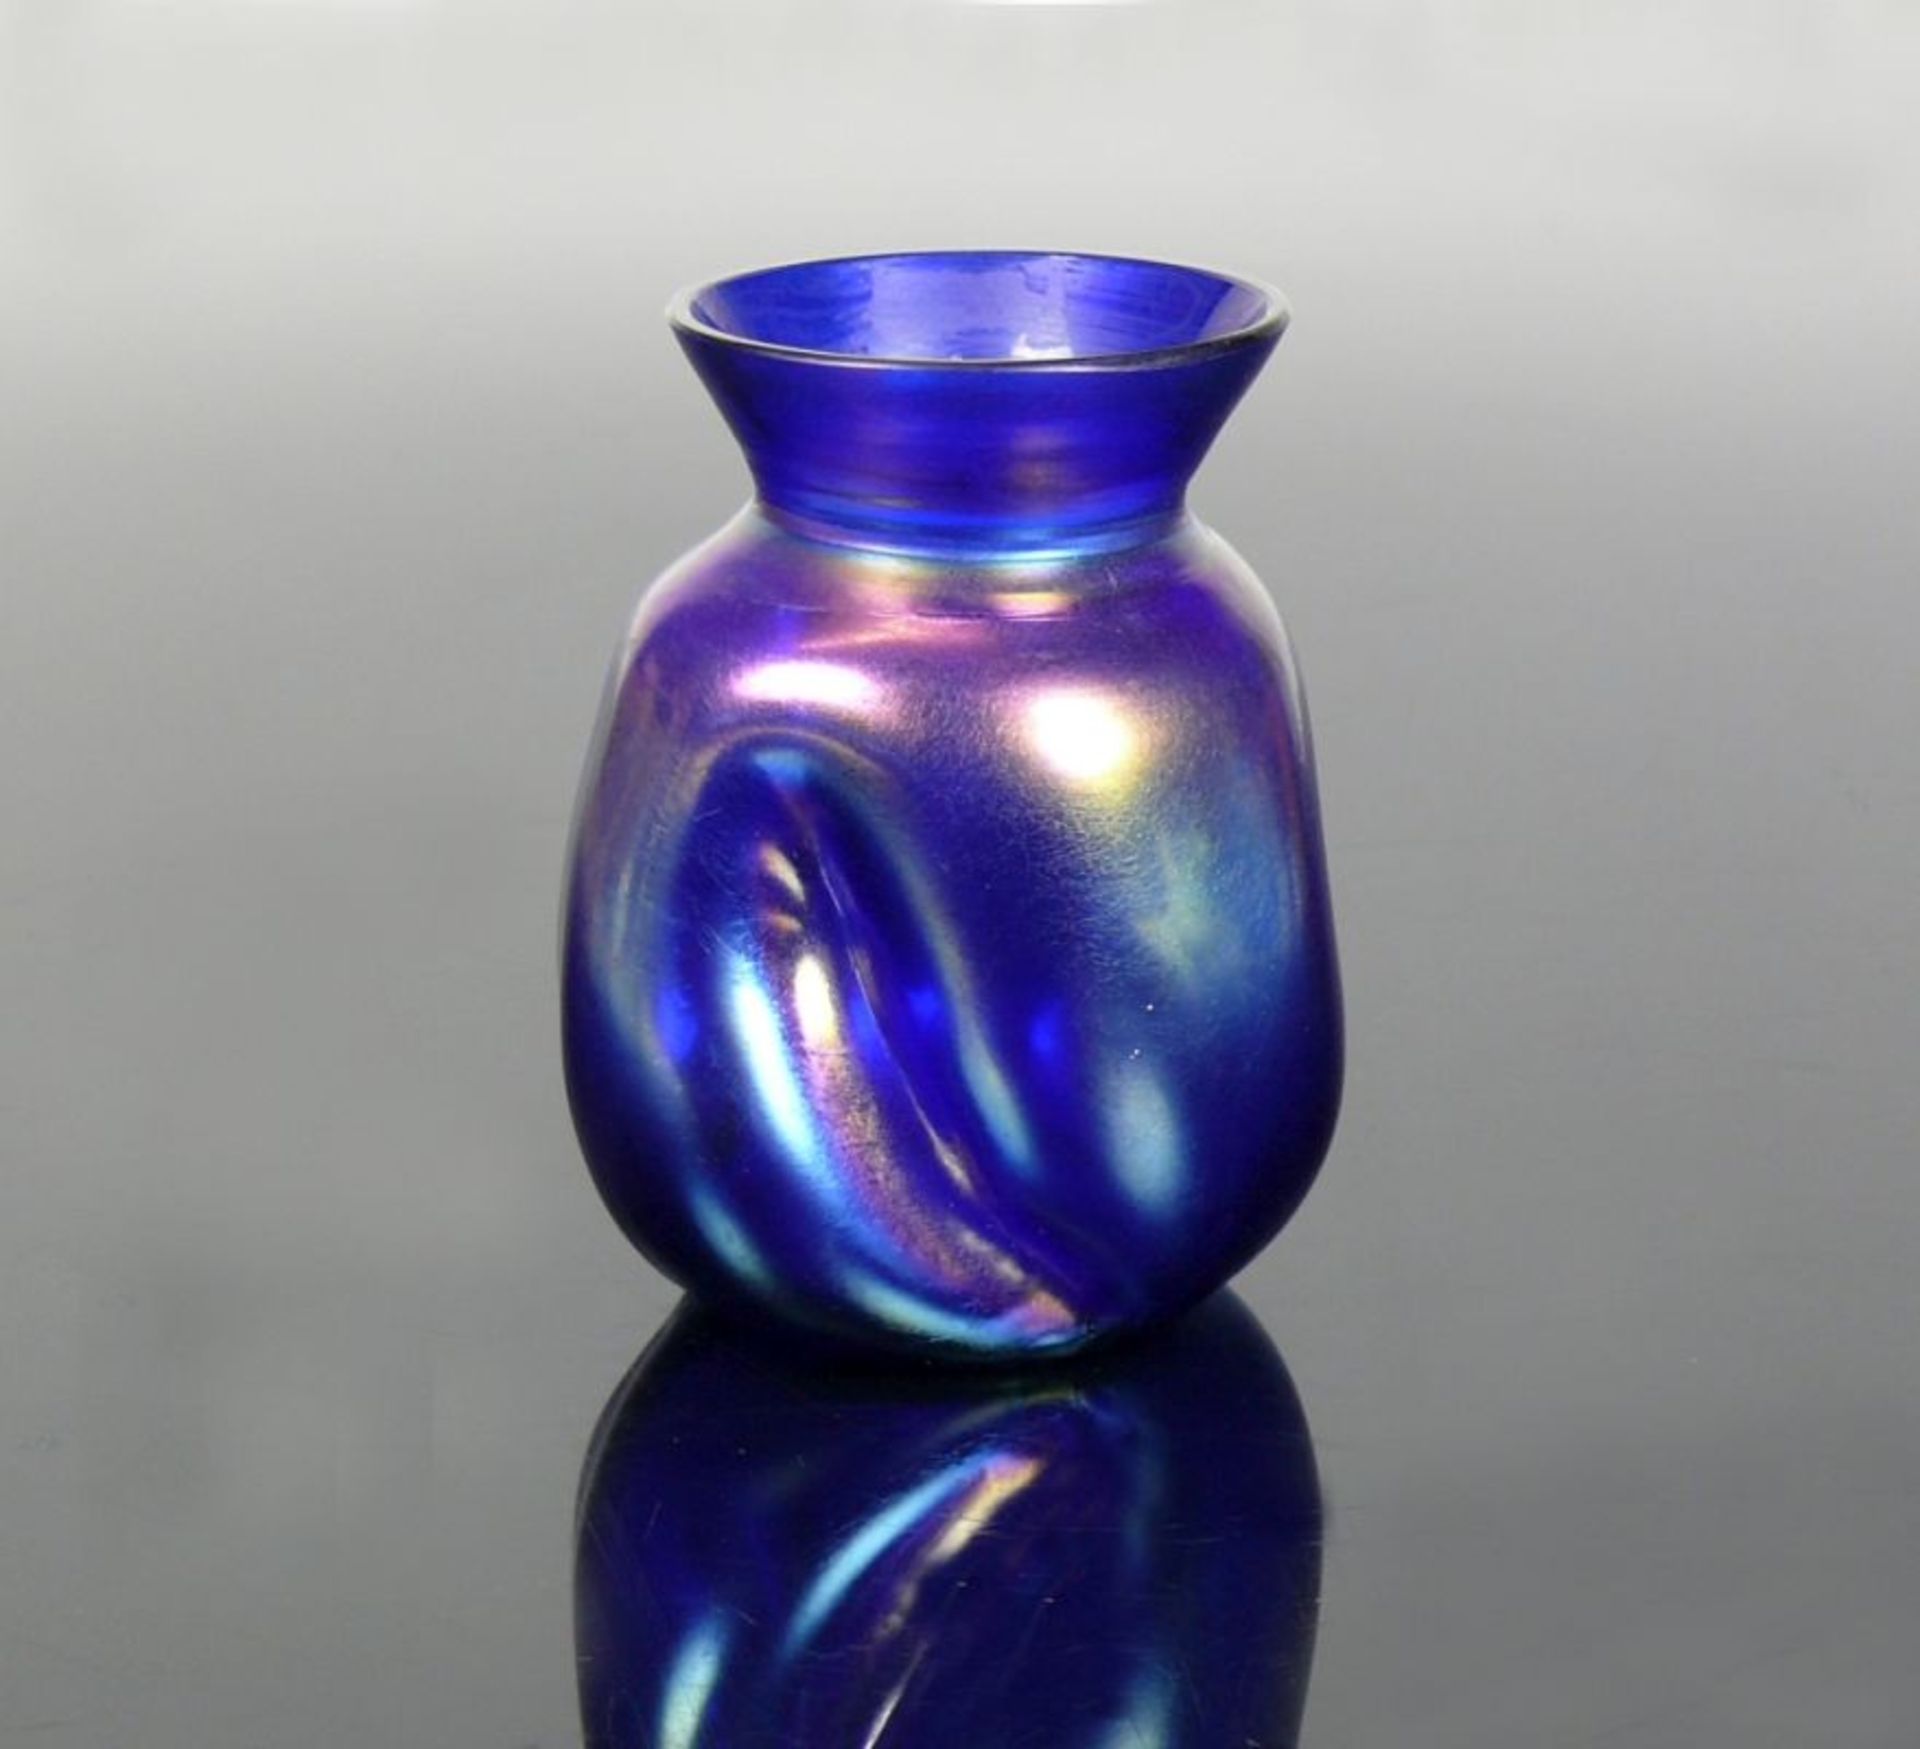 Vase (um 1900)Gefäßkörper mit 3 schräg vertikalen Eindellungen; blaues Glas gelb, silber, grün